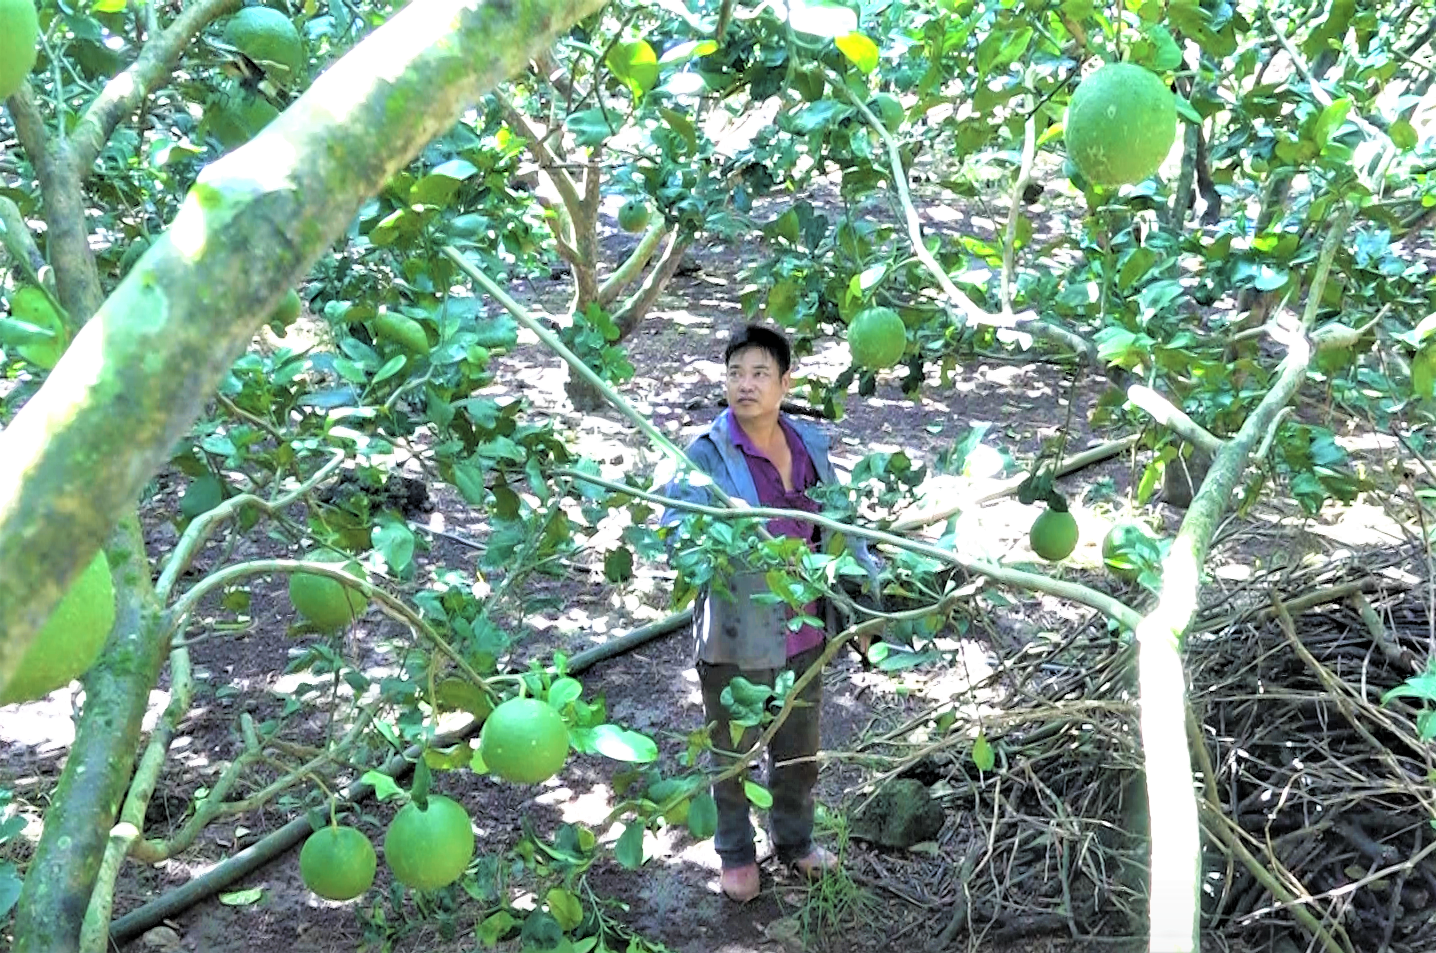 Vùng đất này ở Đồng Nai xưa nghèo rớt nay đổi đời nhờ trồng cây trái đặc sản, có nhà lời hơn 1 tỷ/năm - Ảnh 1.